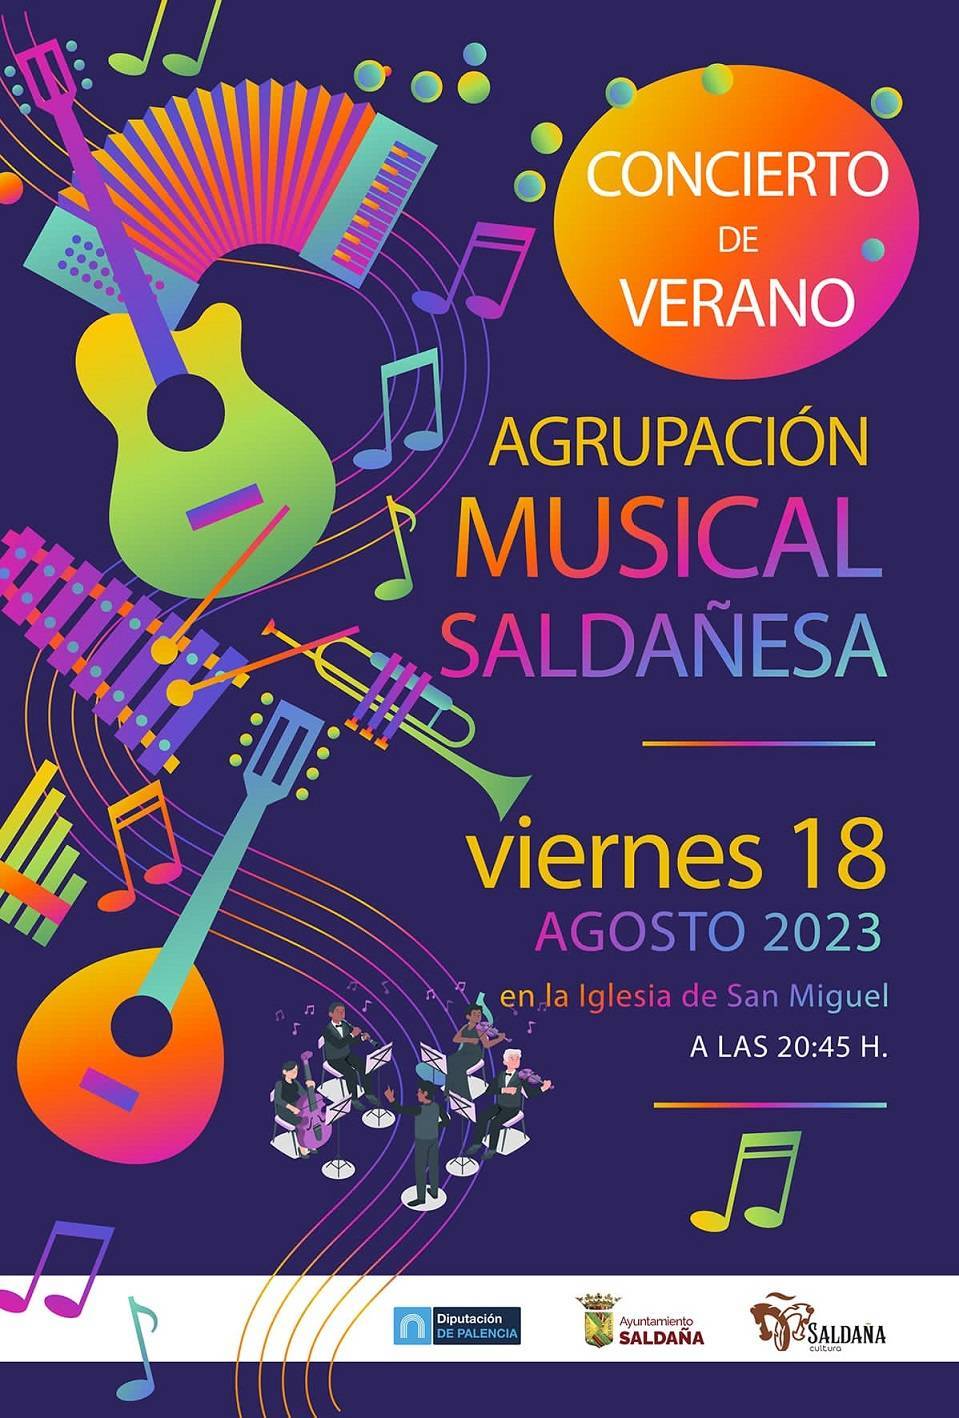 Concierto de verano de la Agrupación Musical Saldañesa (2023) - Saldaña (Palencia)